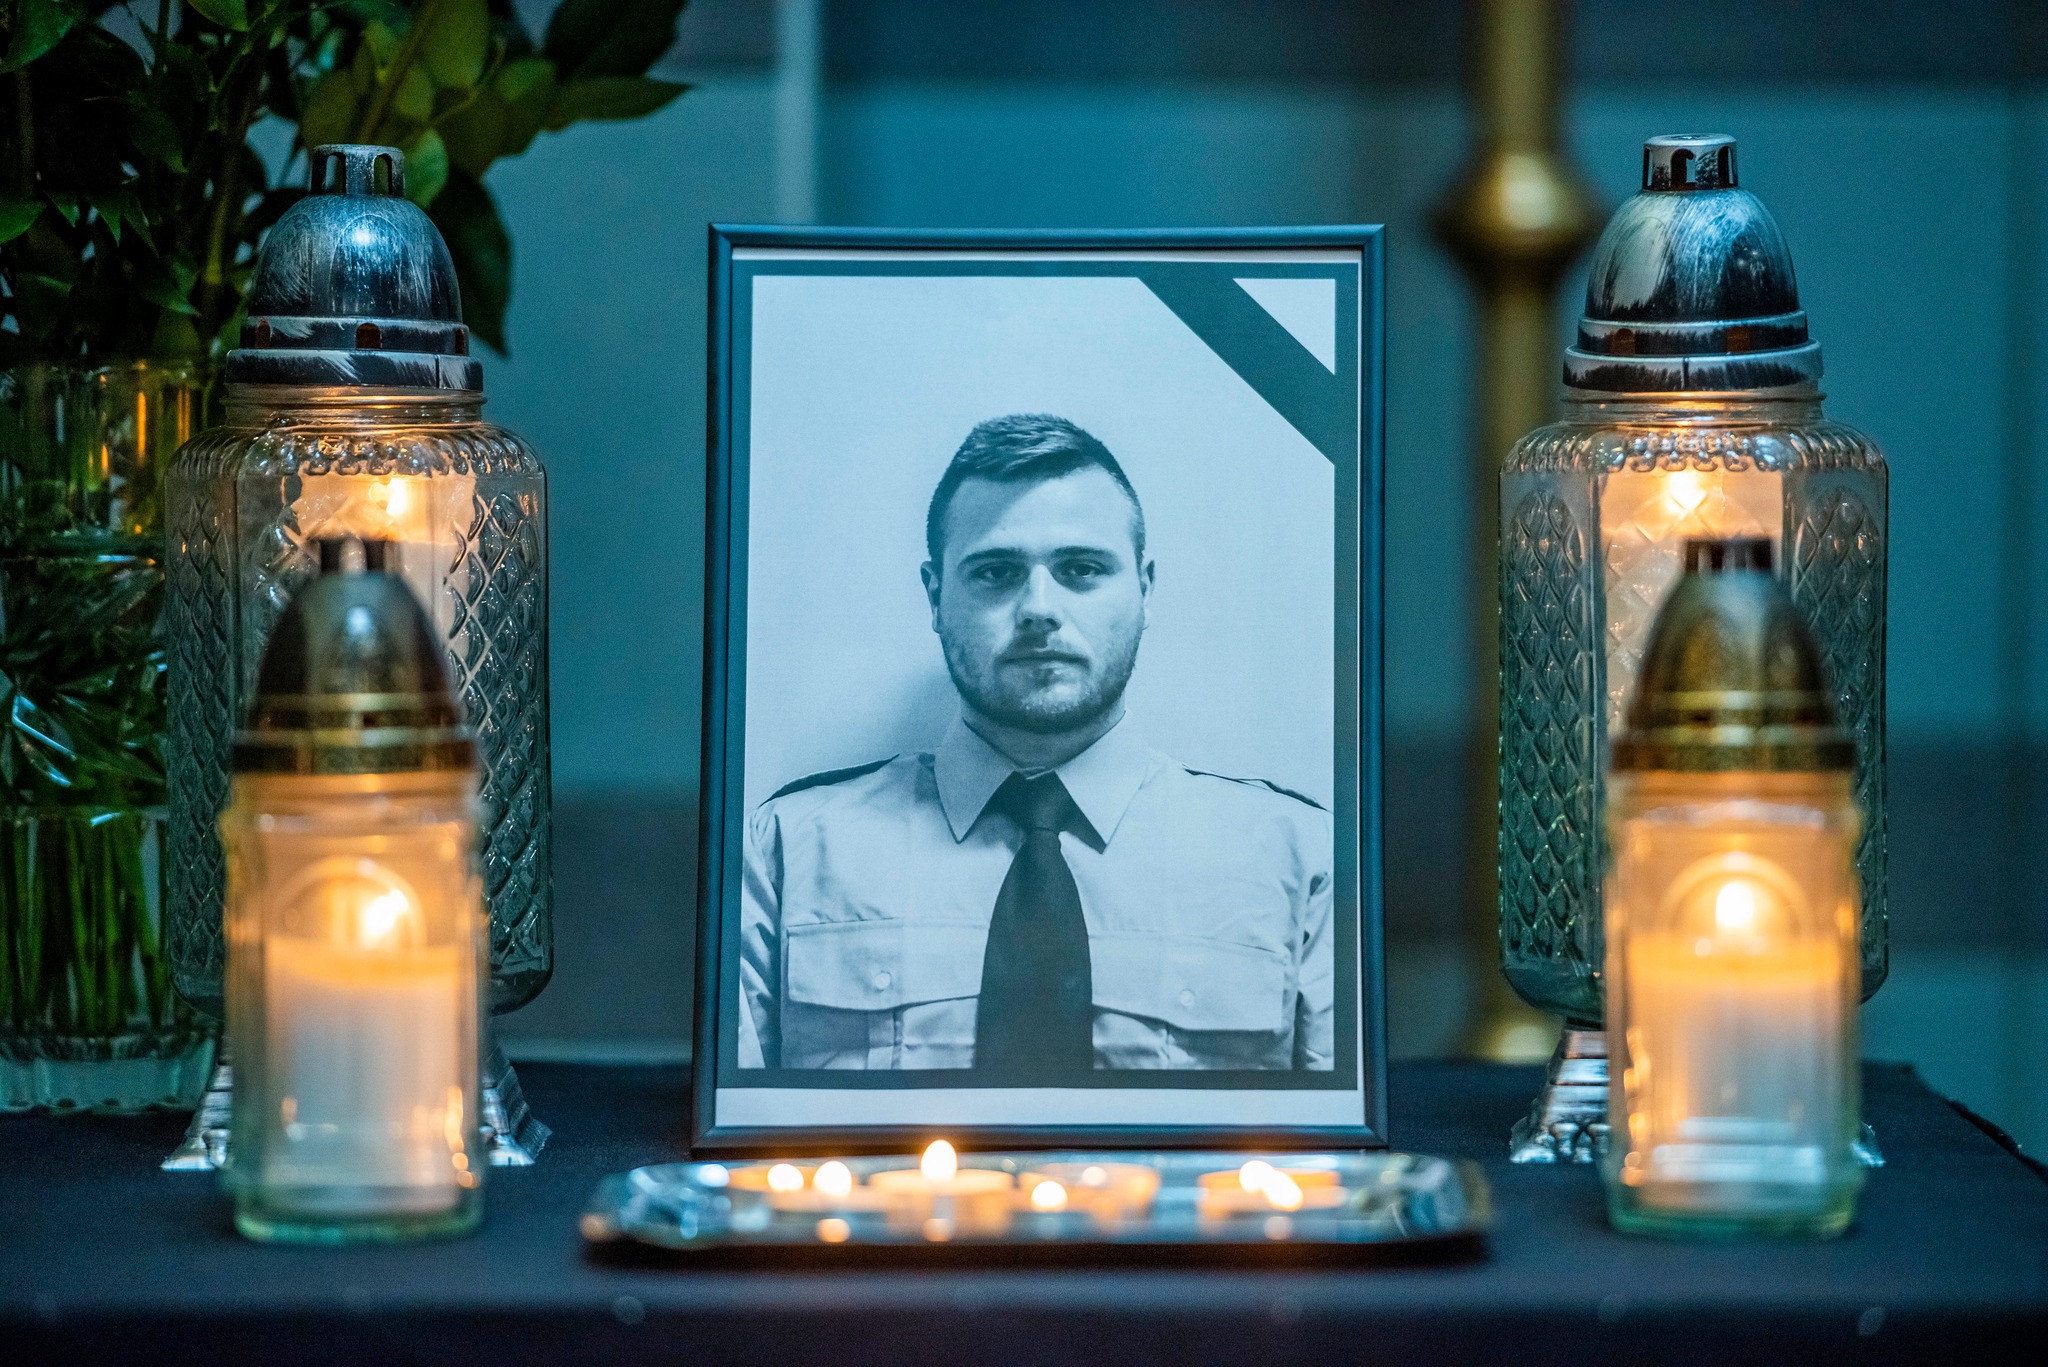 Kiderült: ekkor temetik a hősi halált halt rendőrt - Zártkörű lesz a  búcsúztatása - Blikk